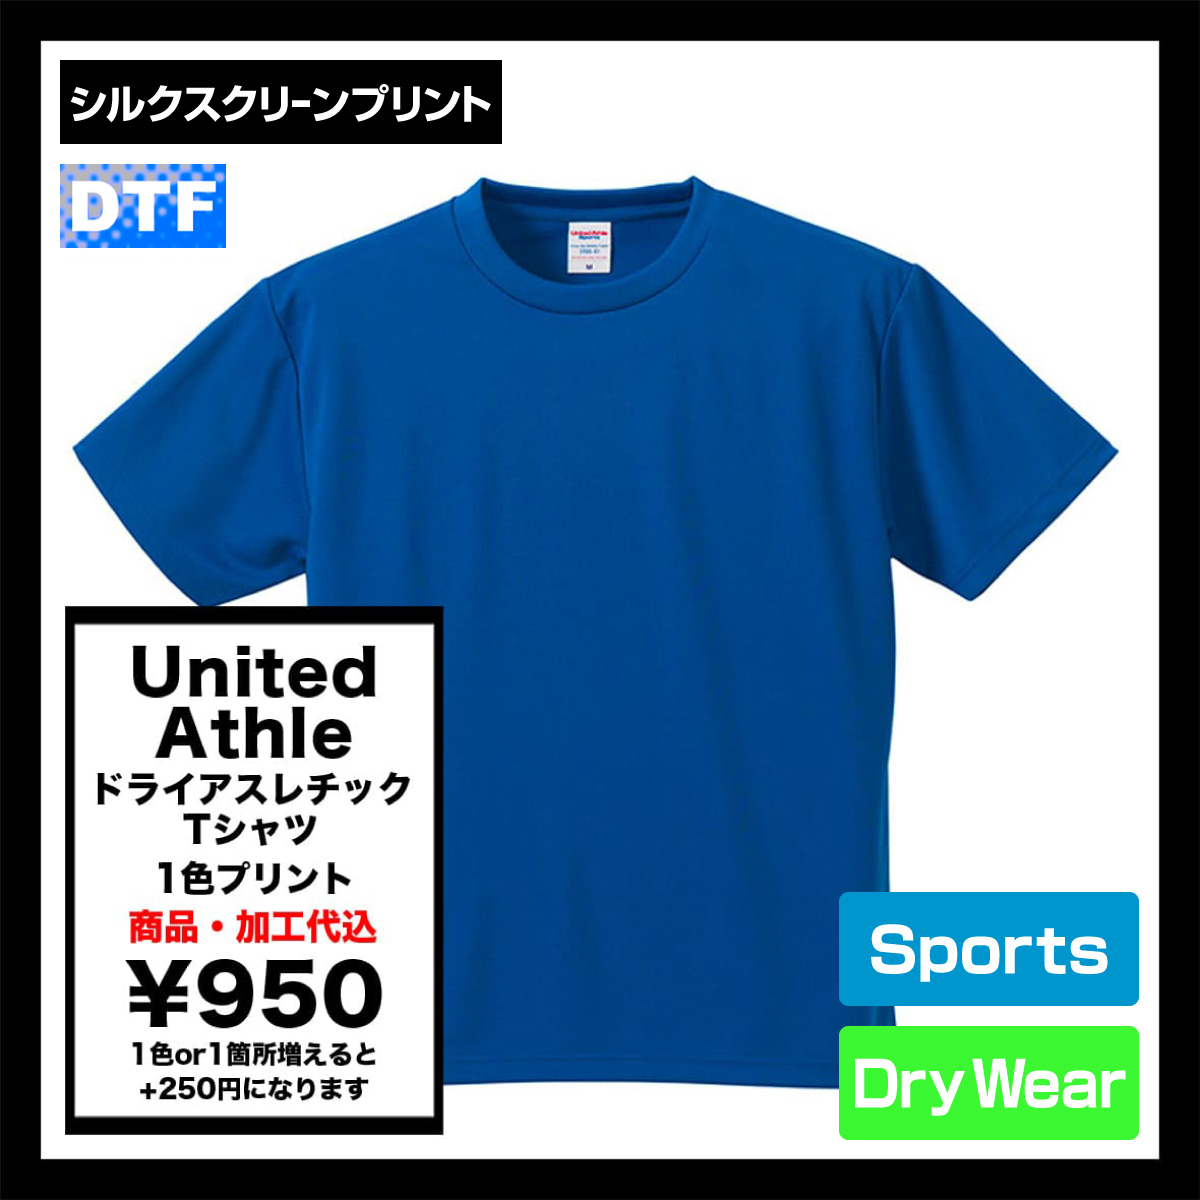 United Athle ユナイテッドアスレ 4.1 oz ドライアスレチック Tシャツ (品番5900-01)